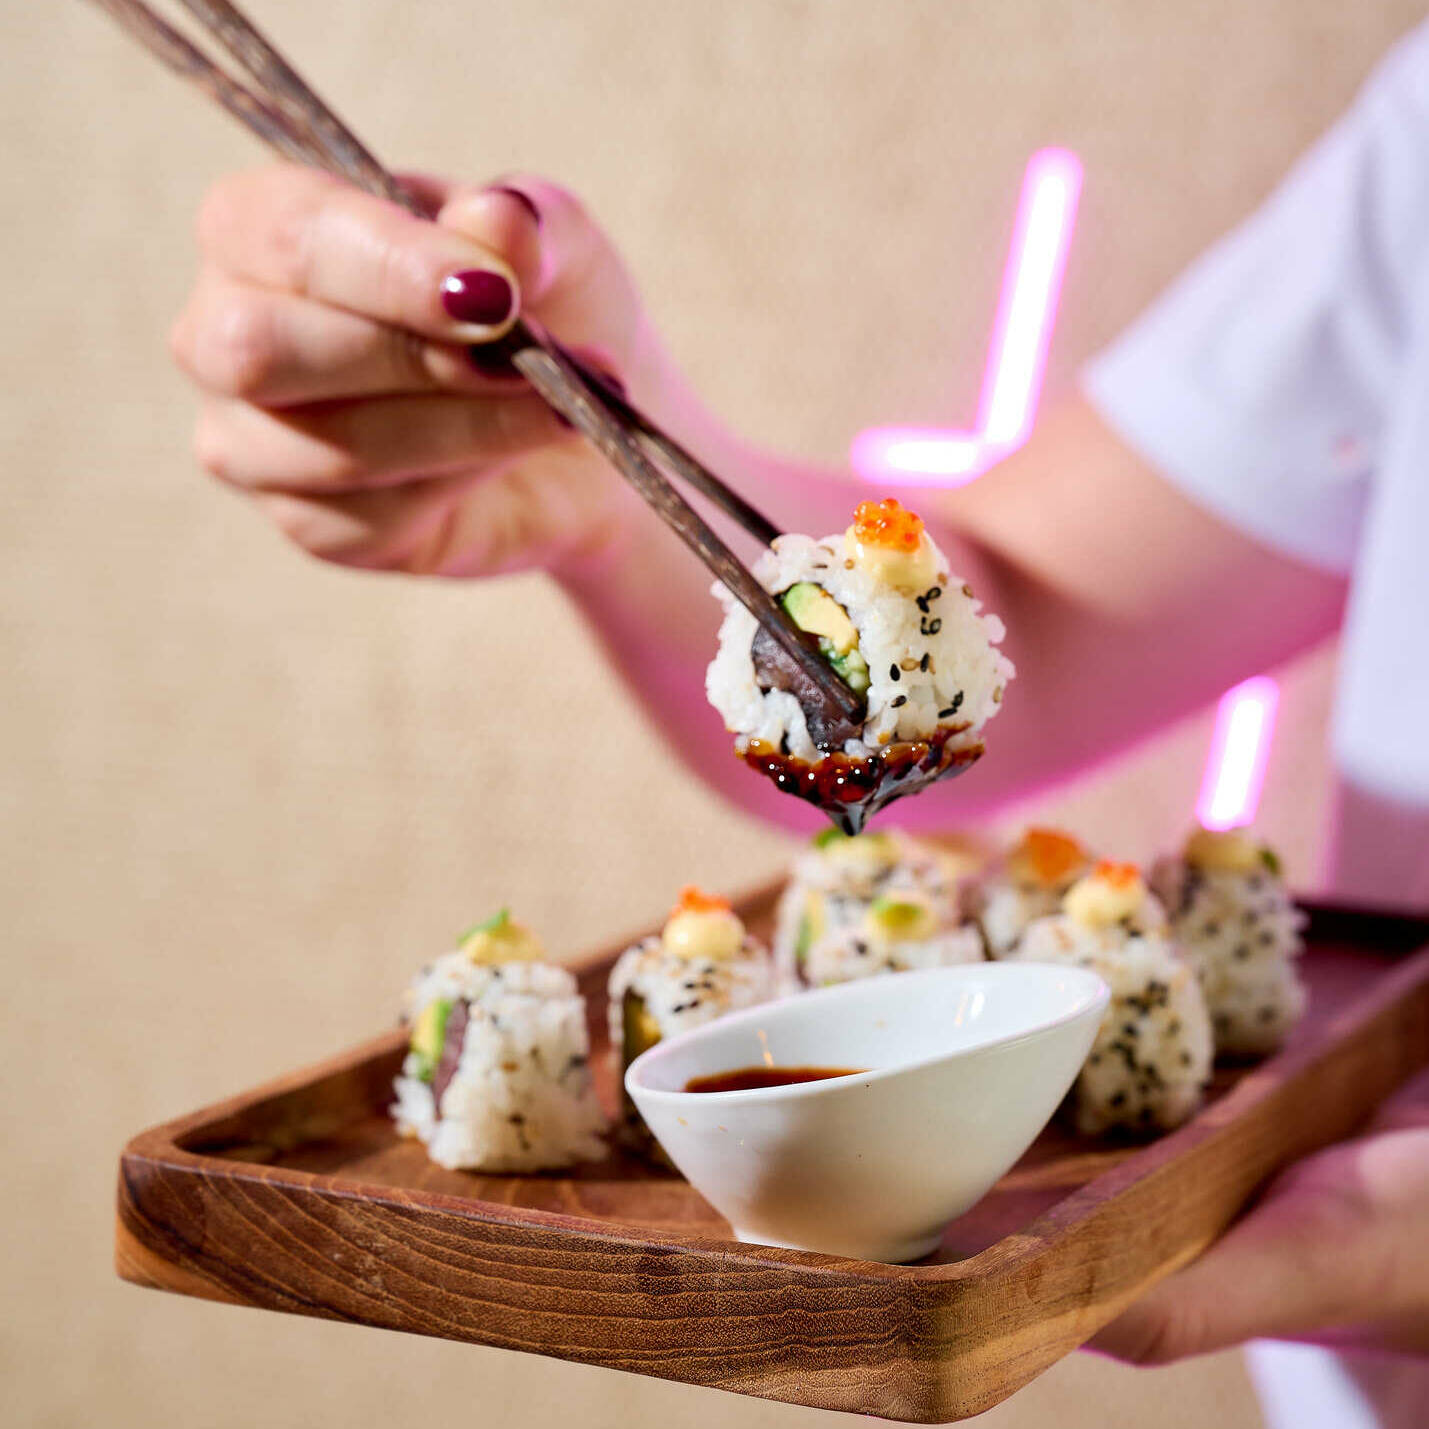 japanese sushi